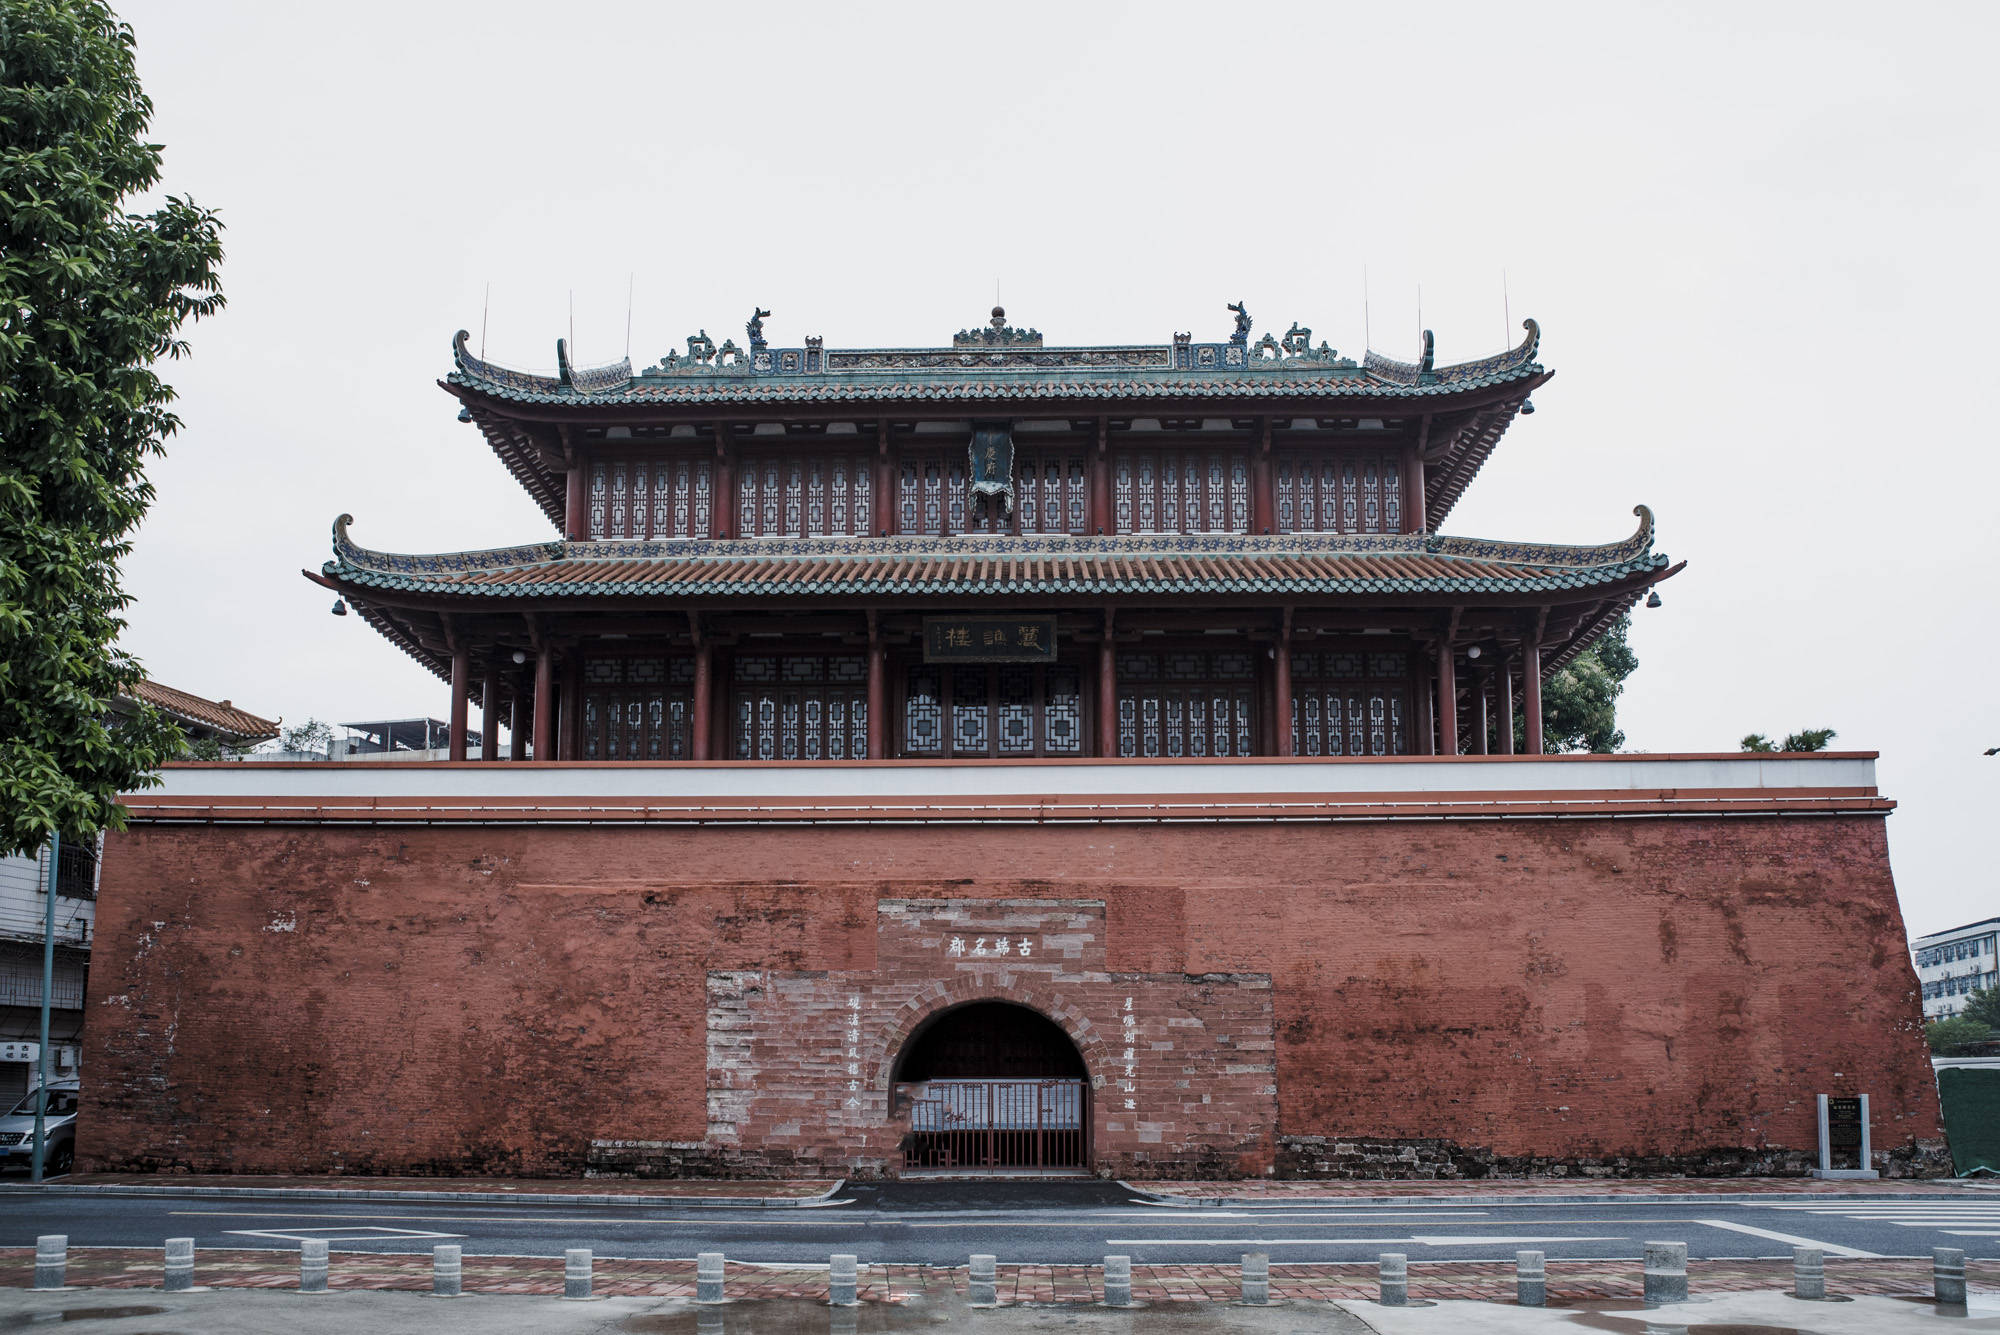 国内极少见的宋代砖城墙,享有小万里长城之称,就藏广东肇庆